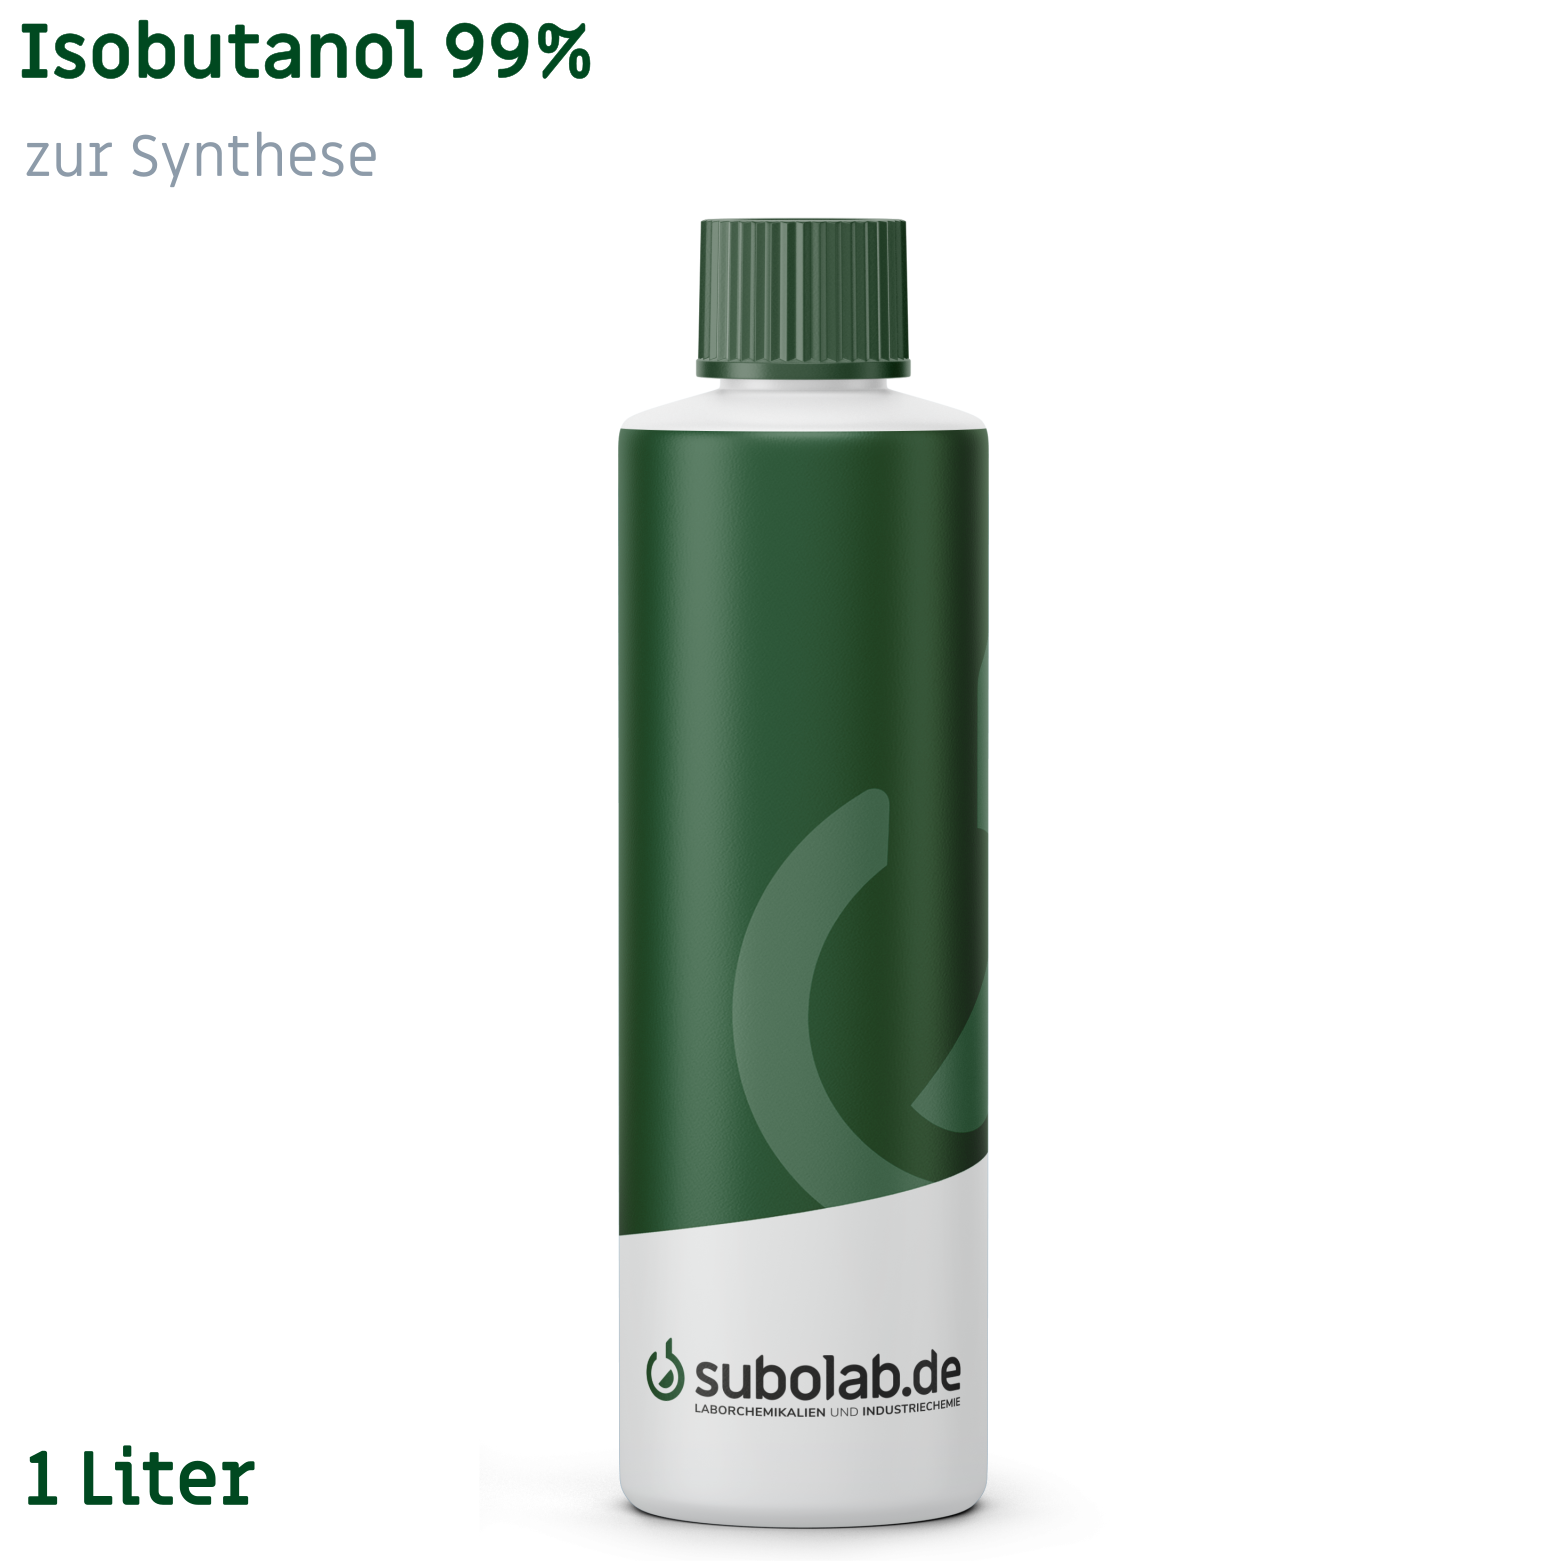 Bild von Isobutanol 99% zur Synthese (1 Liter)